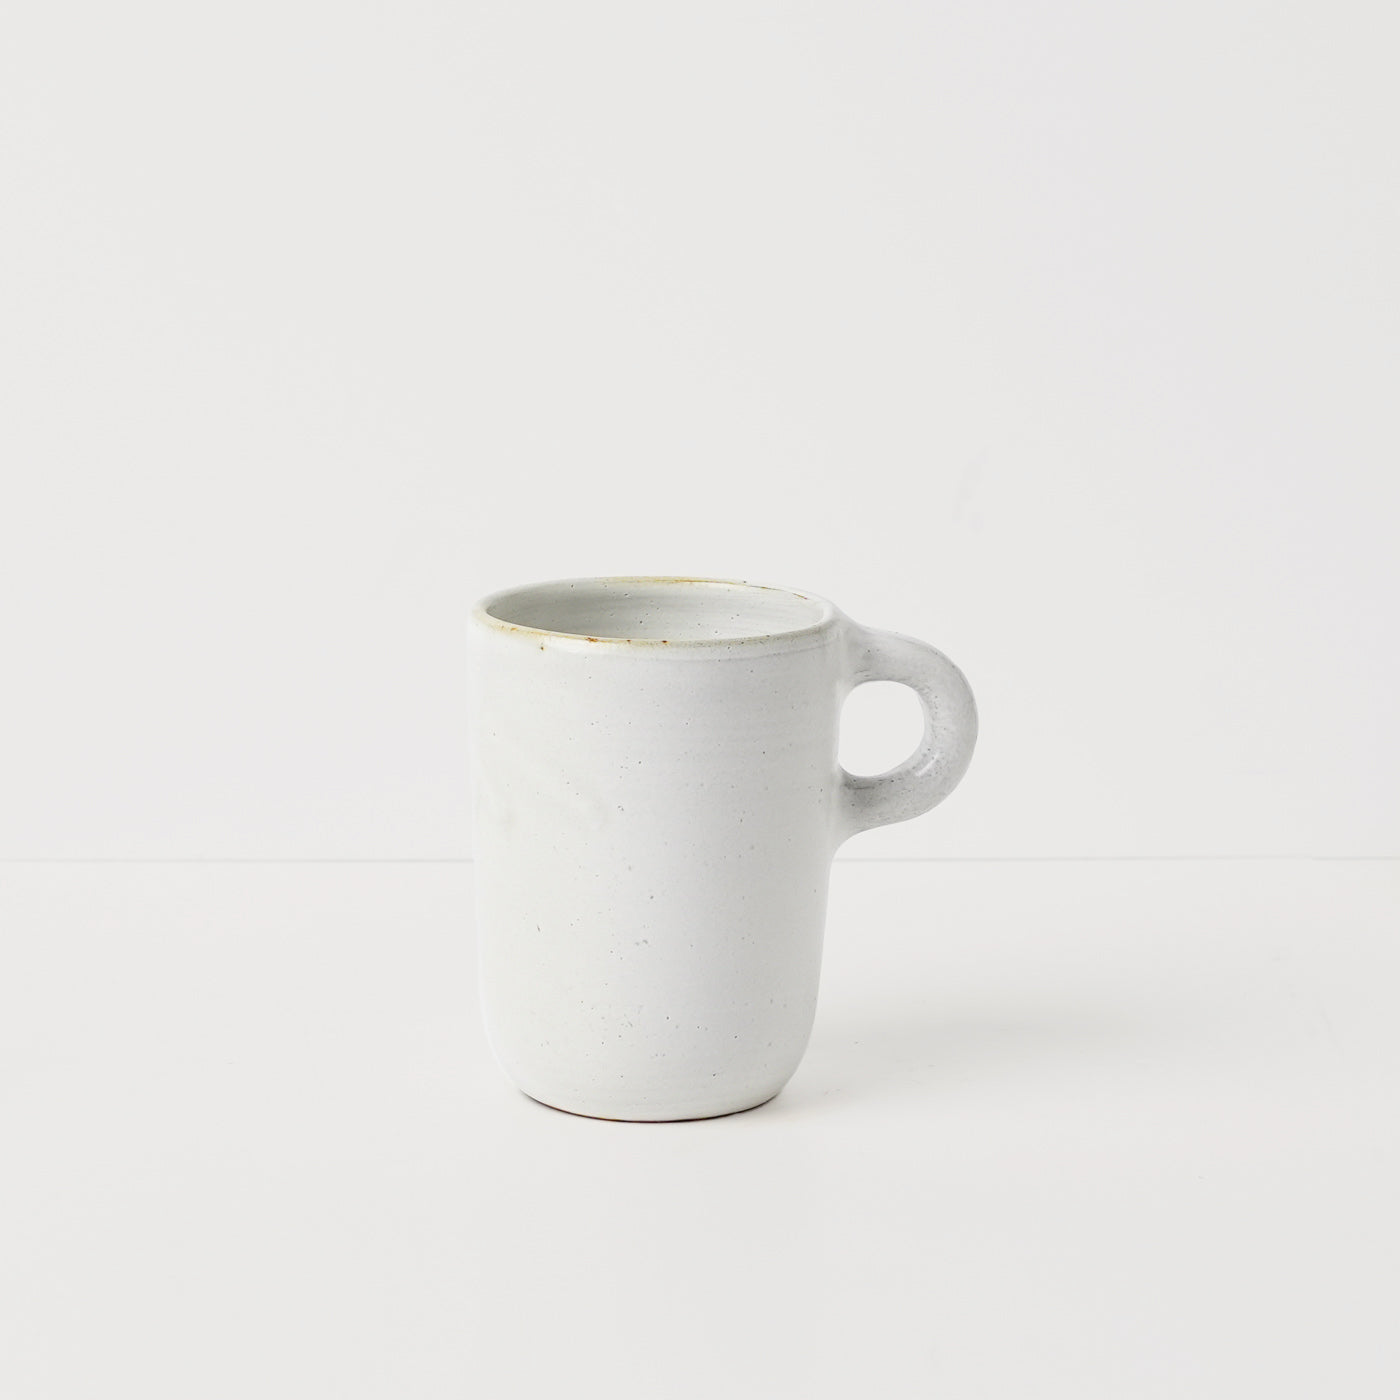 Ivory white ceramic mug by Gaëlle Le Doledec